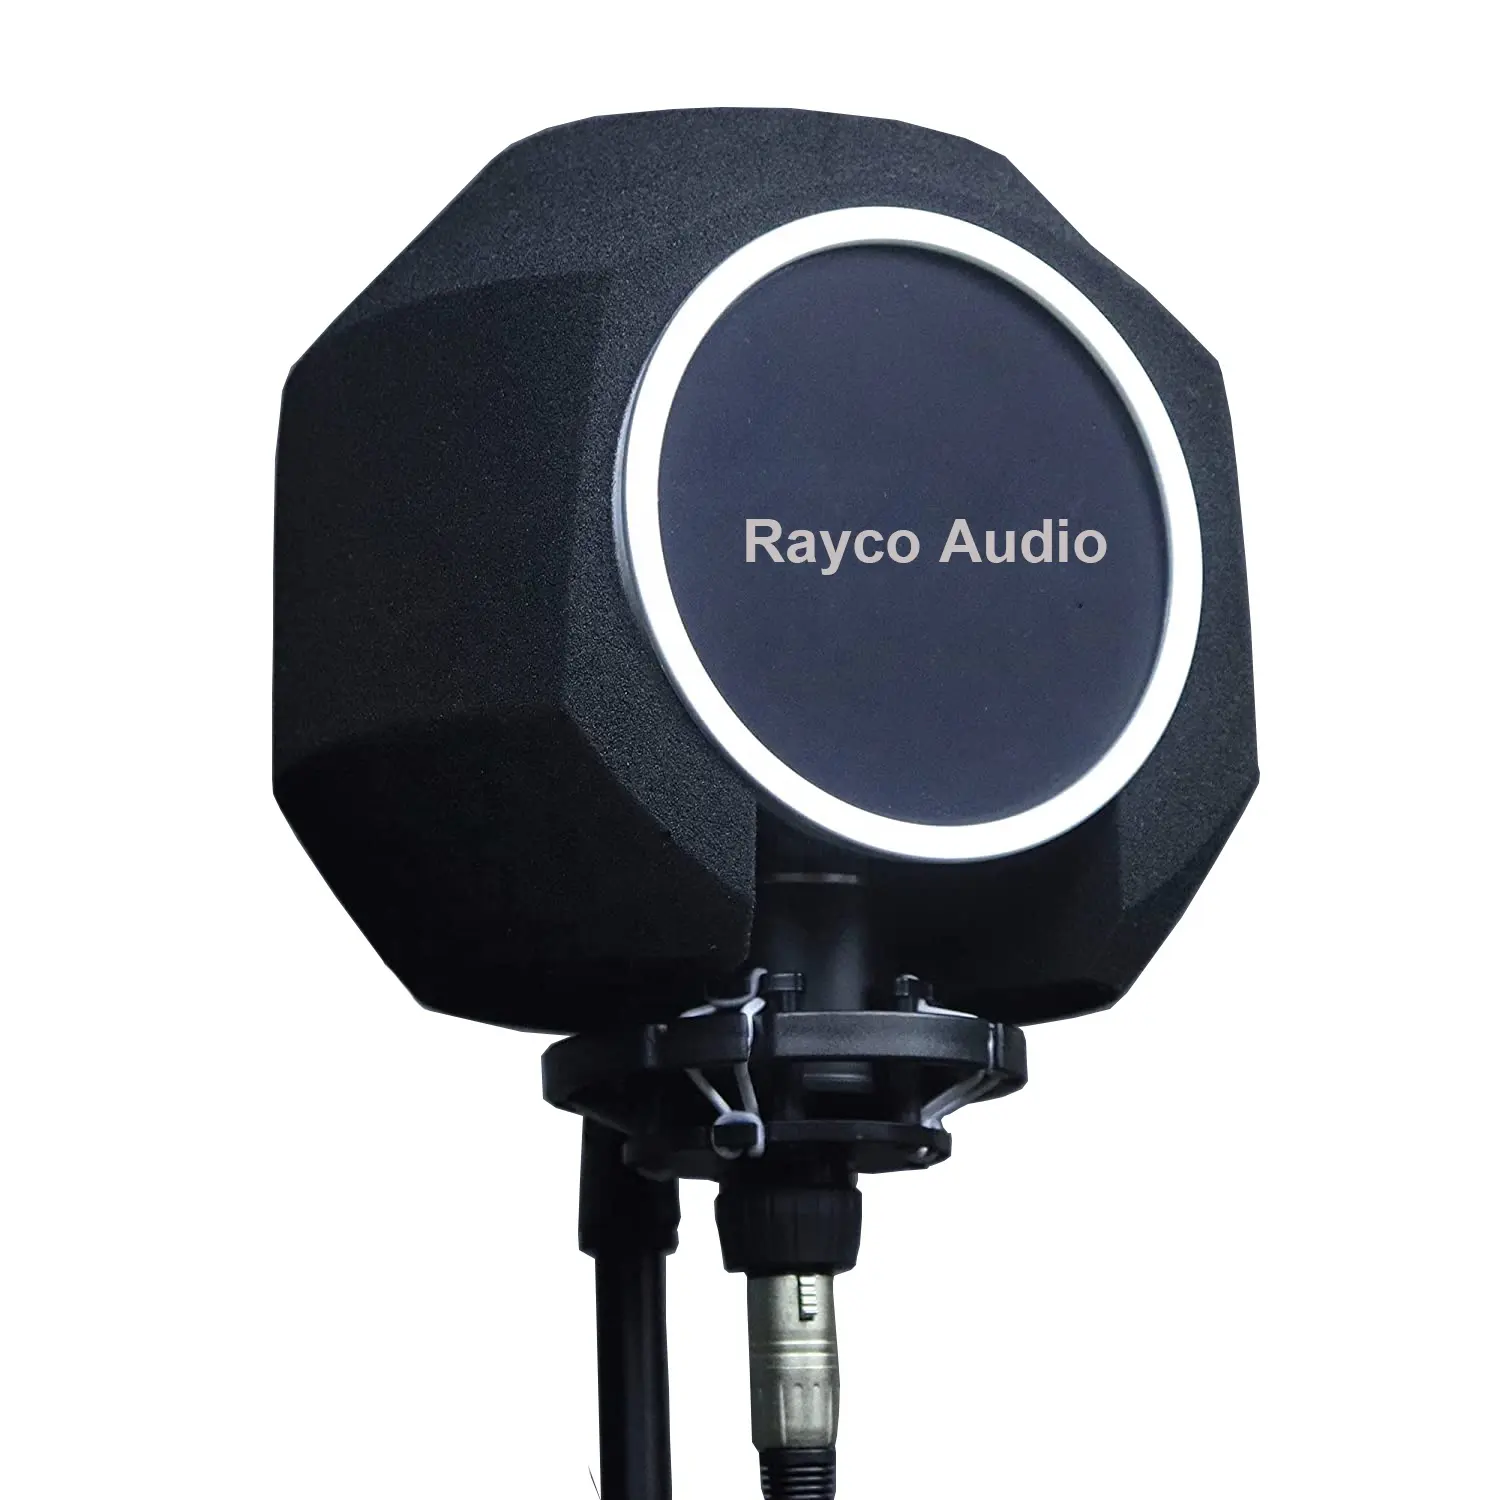 Protector de aislamiento de sonido para micrófono profesional, cubierta de bola de pantalla acústica para grabación de estudio, micrófono Vocal